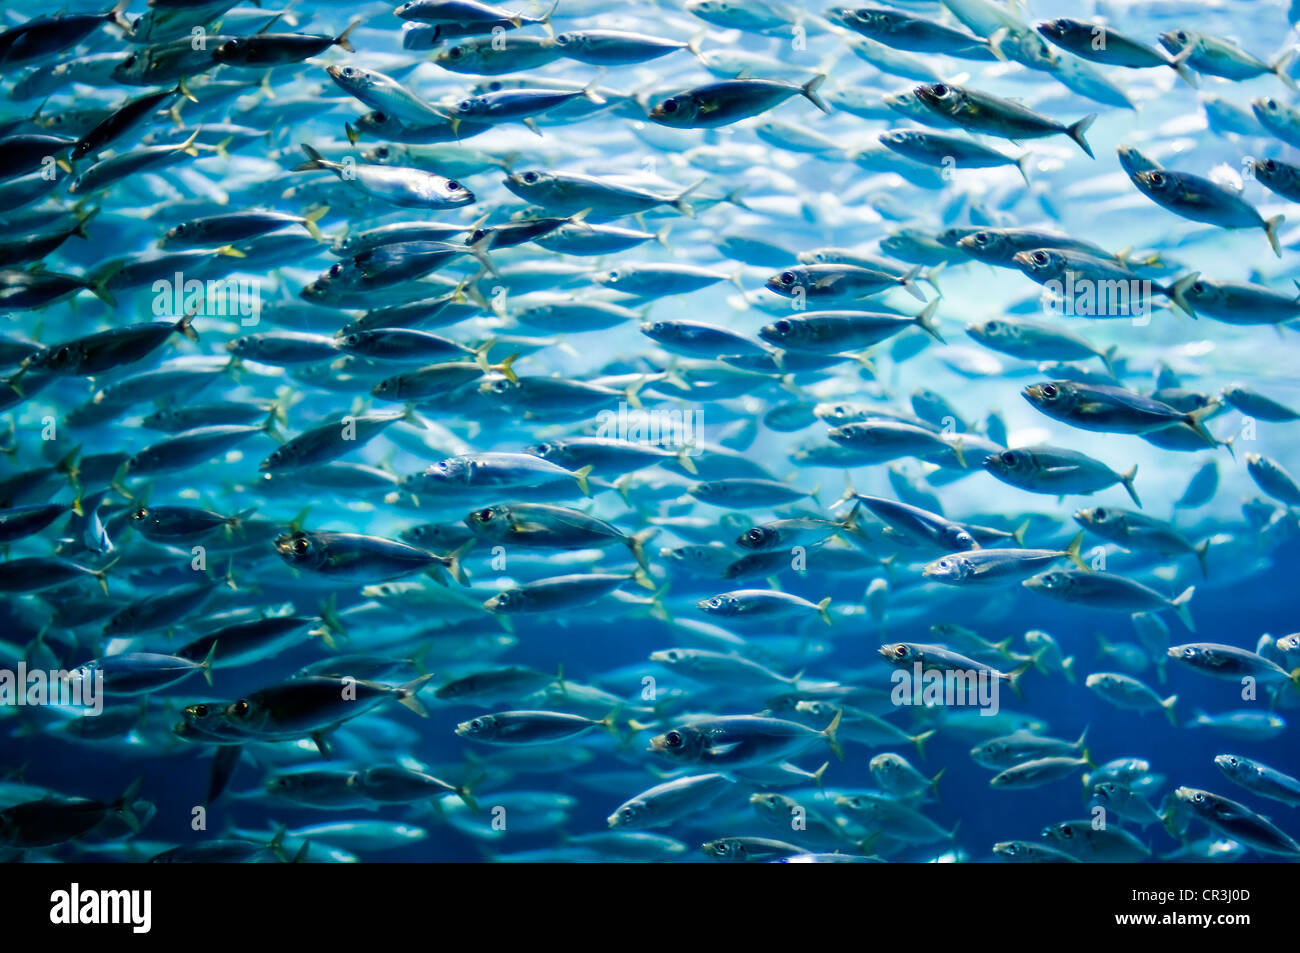 Shoal of sardines, European pilchard (Sardina pilchardus) Stock Photo